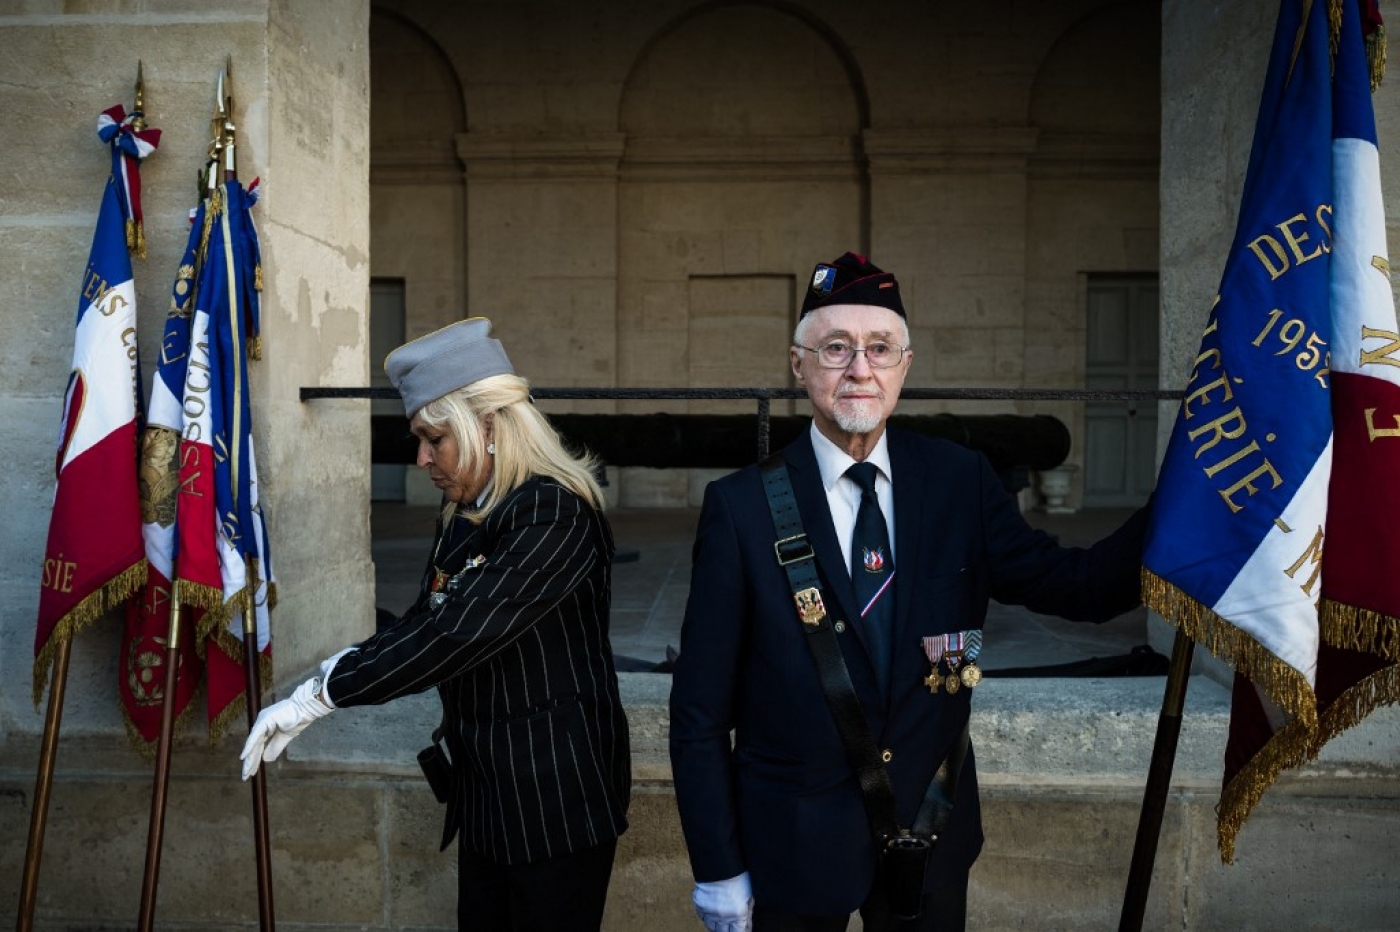  Un ancien harki lors de la célébration de la Journée nationale d’hommage aux harkis, le 25 septembre 2018, aux Invalides, Paris (Philippe Lopez/AFP)